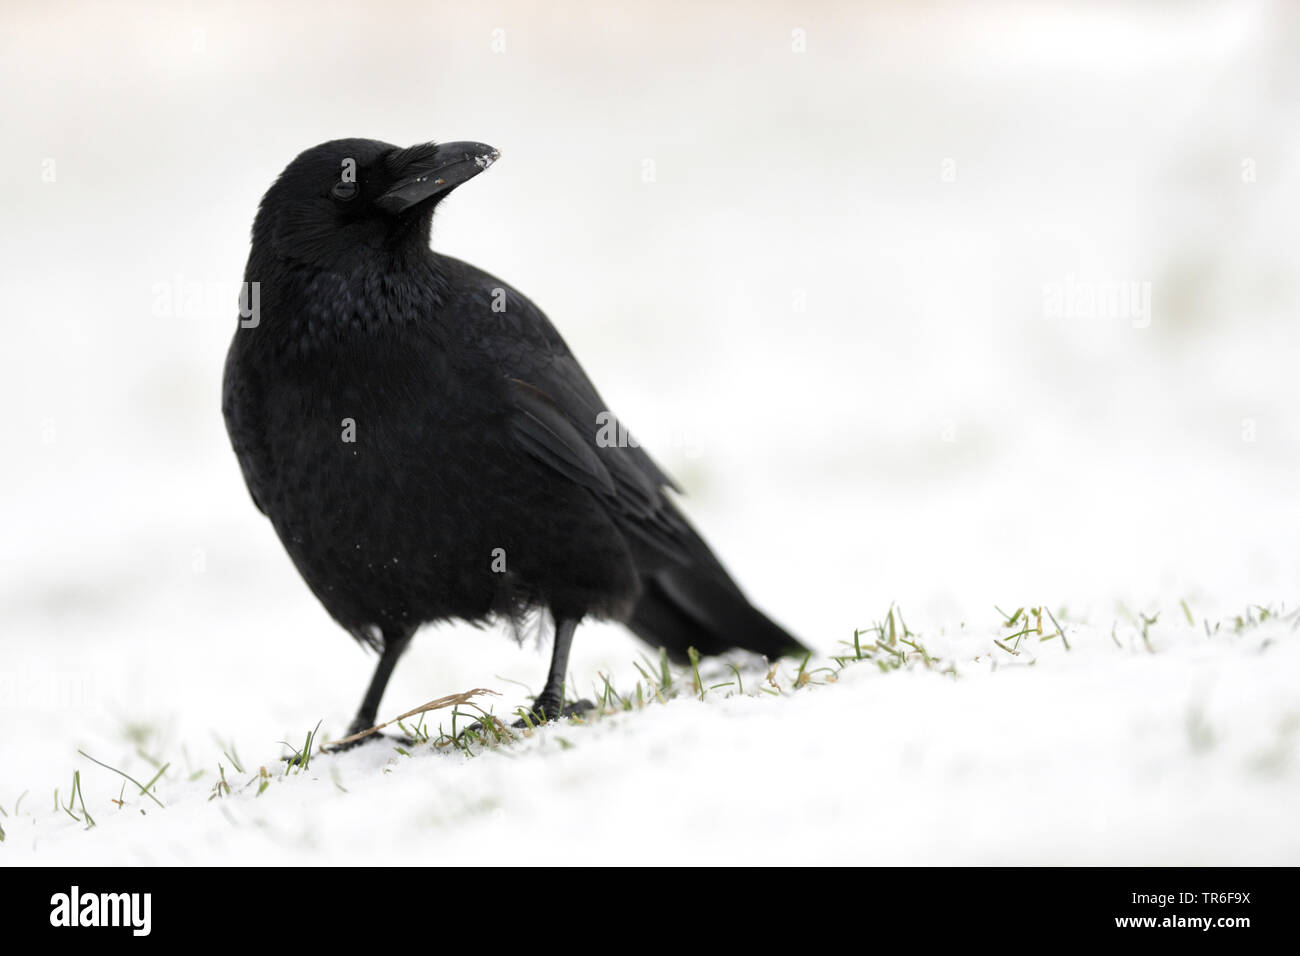 Corneille noire (Corvus corone, Corvus corone corone), sur une prairie couverte de neige, Allemagne Banque D'Images